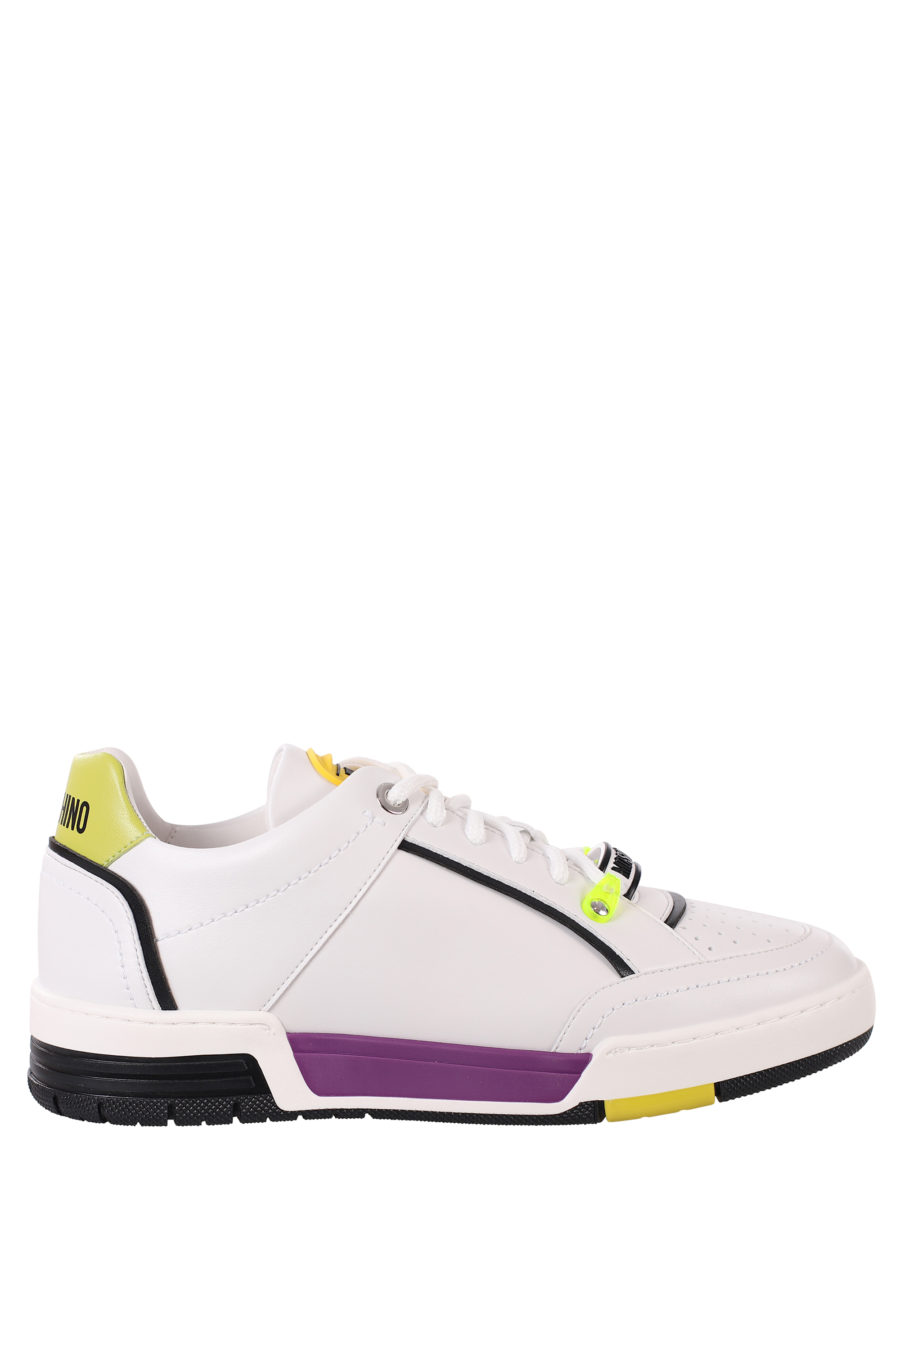 Zapatillas blancas con detalles lila y amarillo - IMG 0375